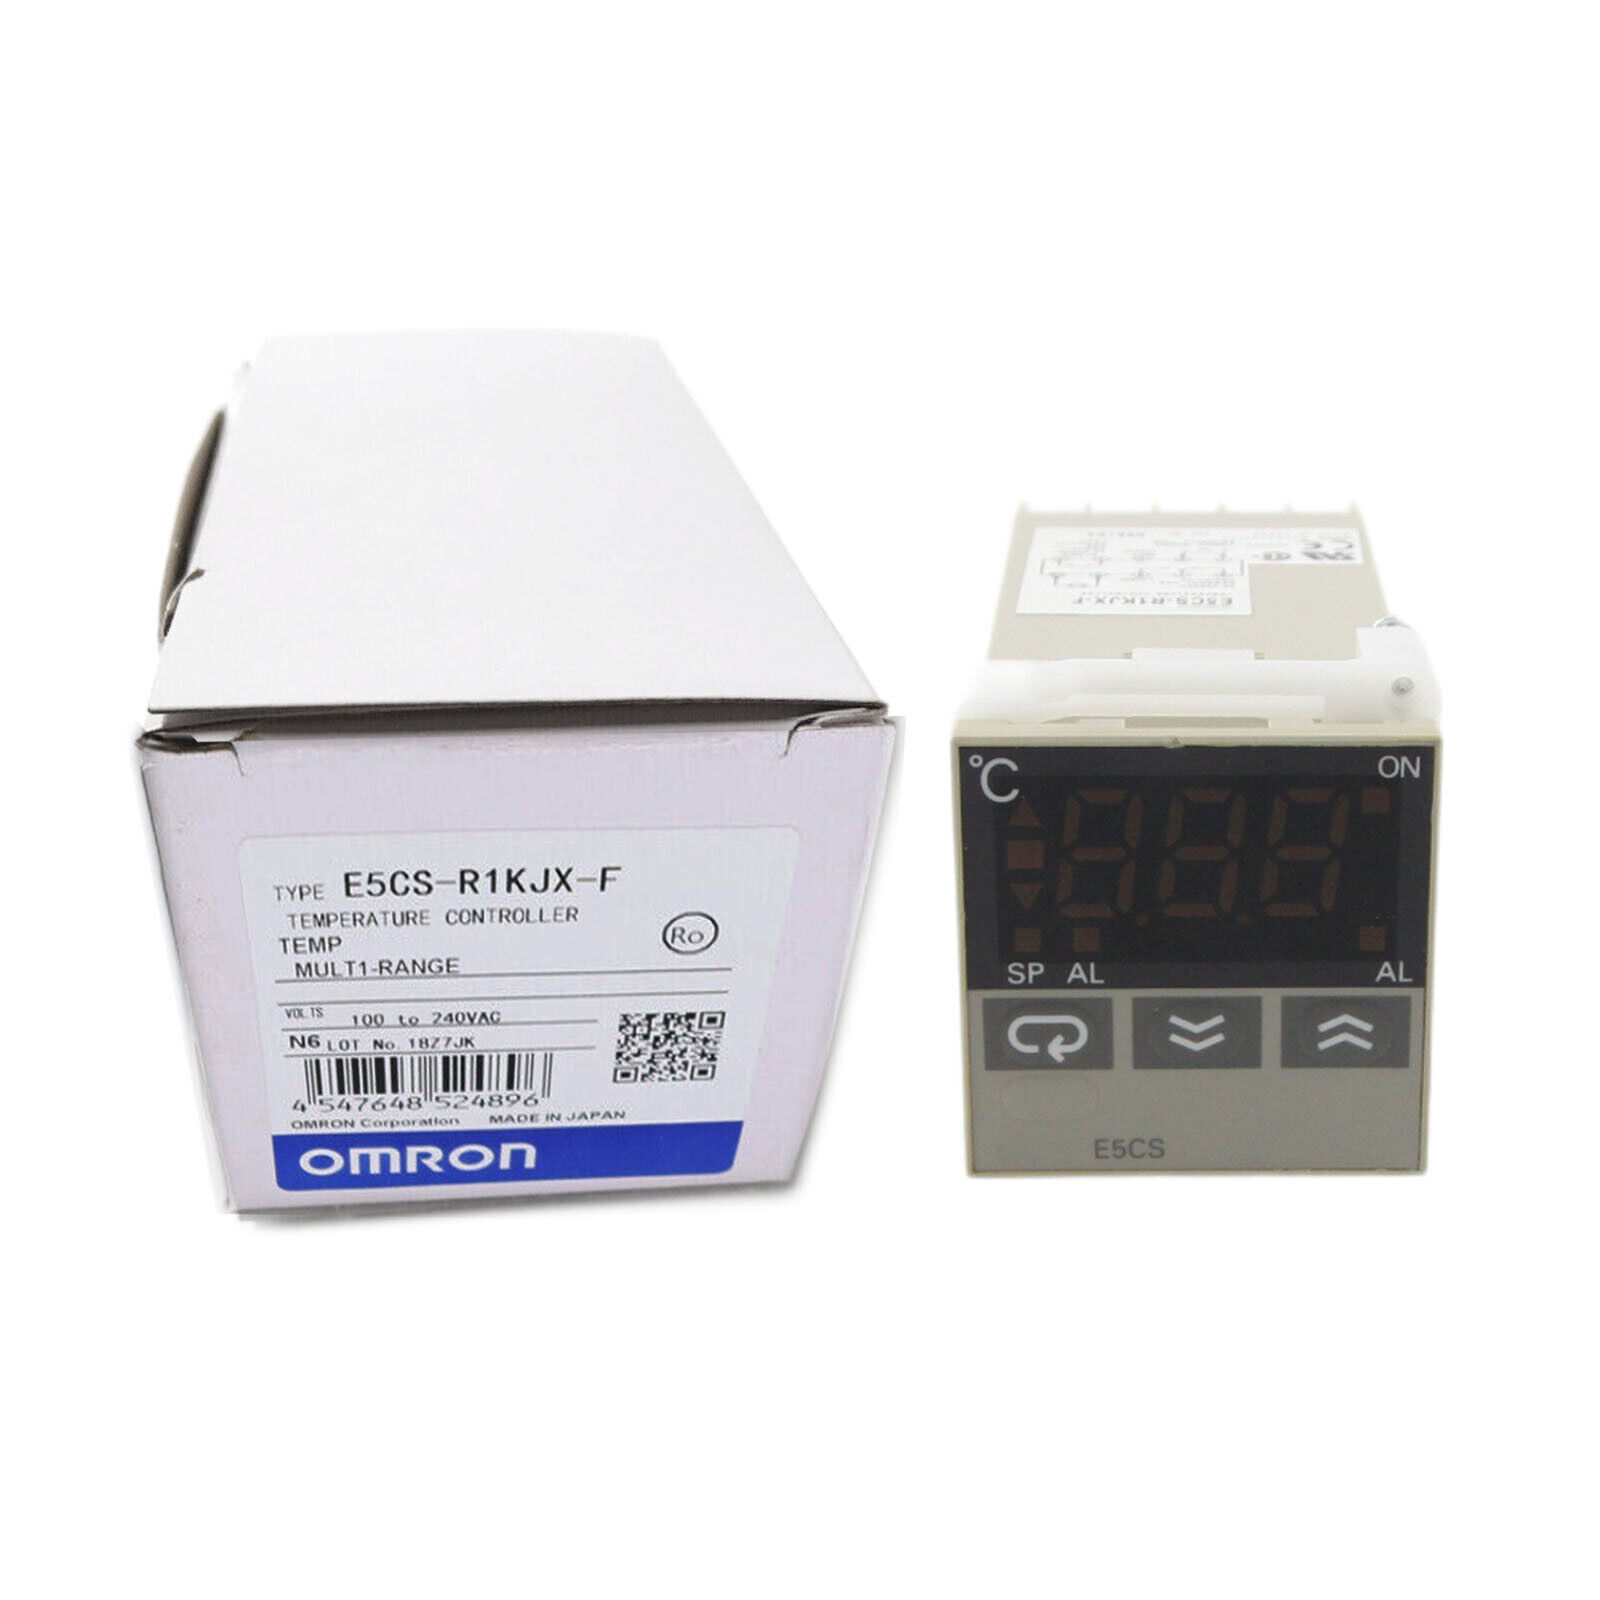 New In Box OMRON E5CS-R1KJX-F Temperature Controller